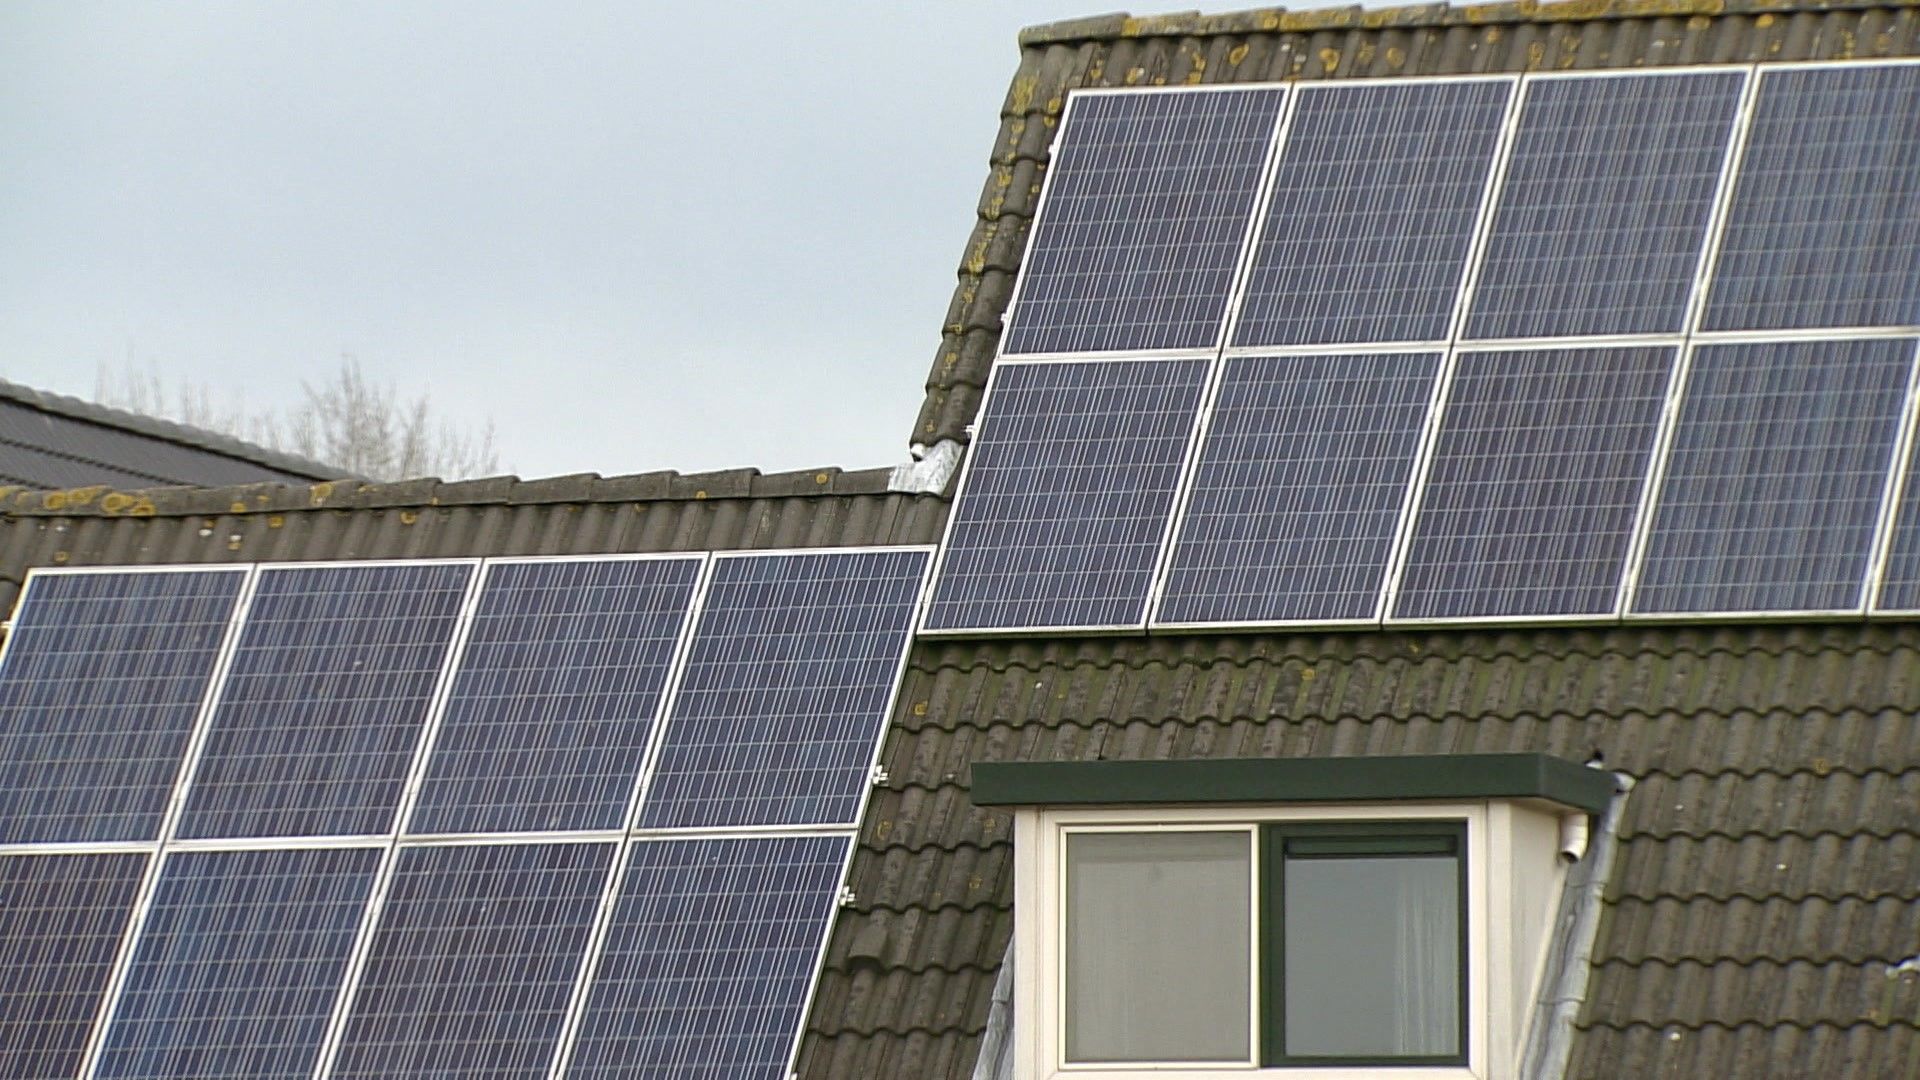 Plan recycling oude zonnepanelen maakt kans op miljoen euro